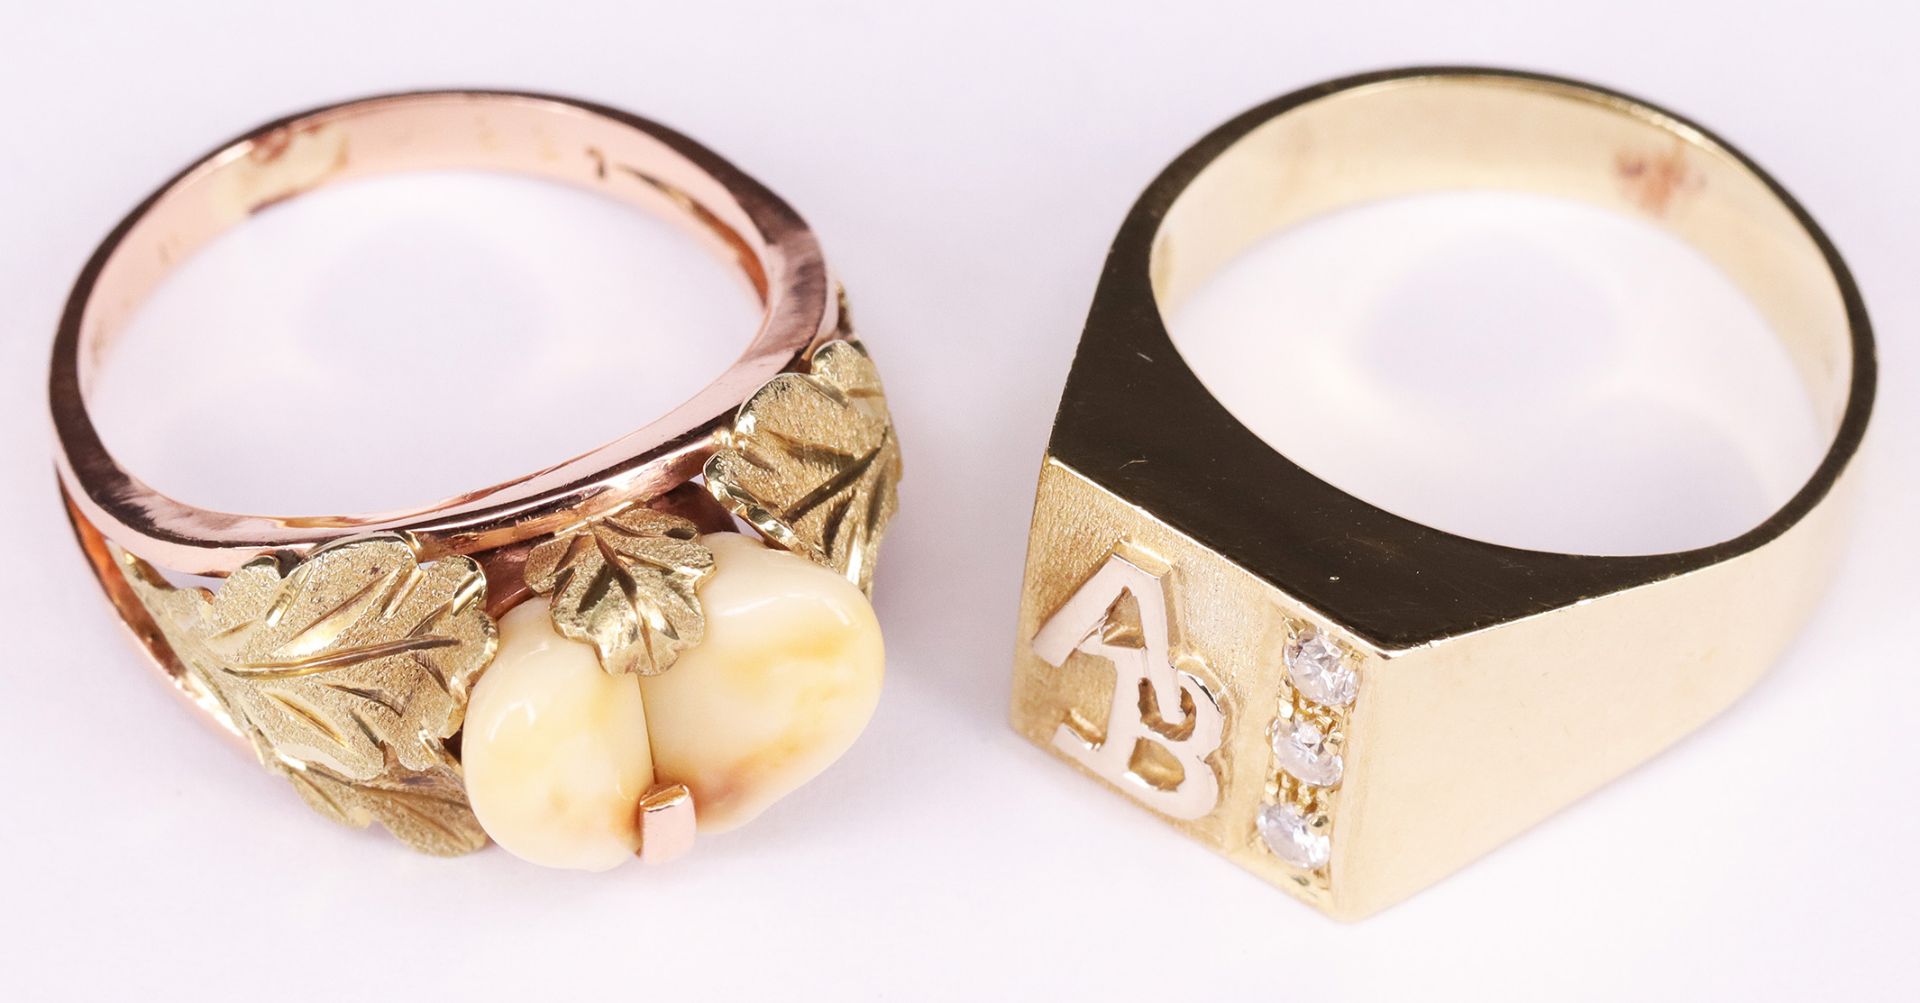 Zwei Goldringe: Ring mit Grandeln und Eichenblättern, 585er GG, RG61, 7,77 g; Ring mit Monogramm "